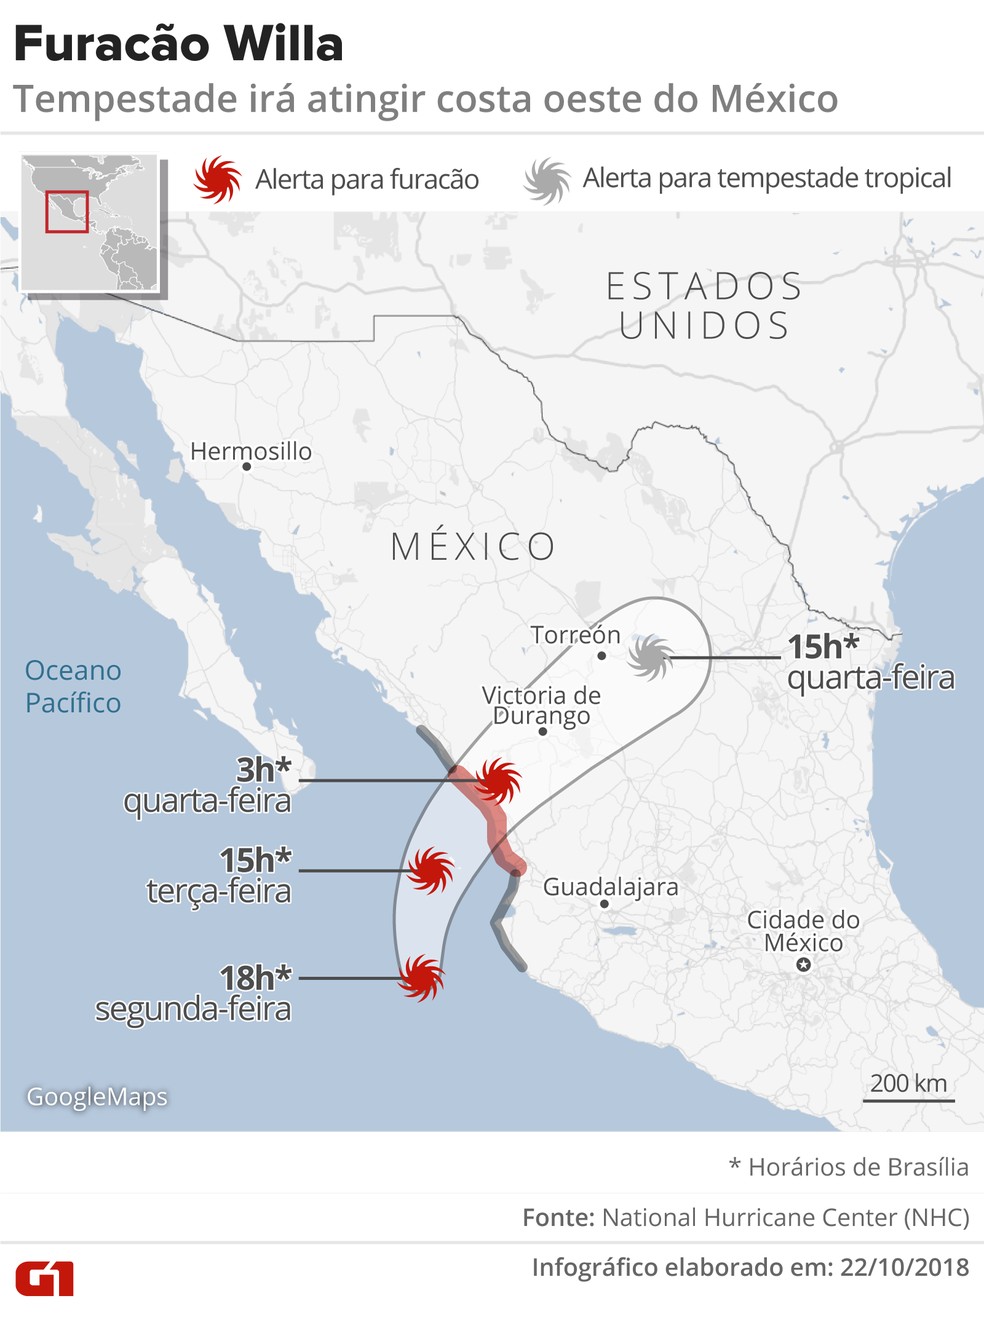 furacao willa - Furacão Willa alcança categoria 5 ao atravessar o Pacífico e se aproximar do México